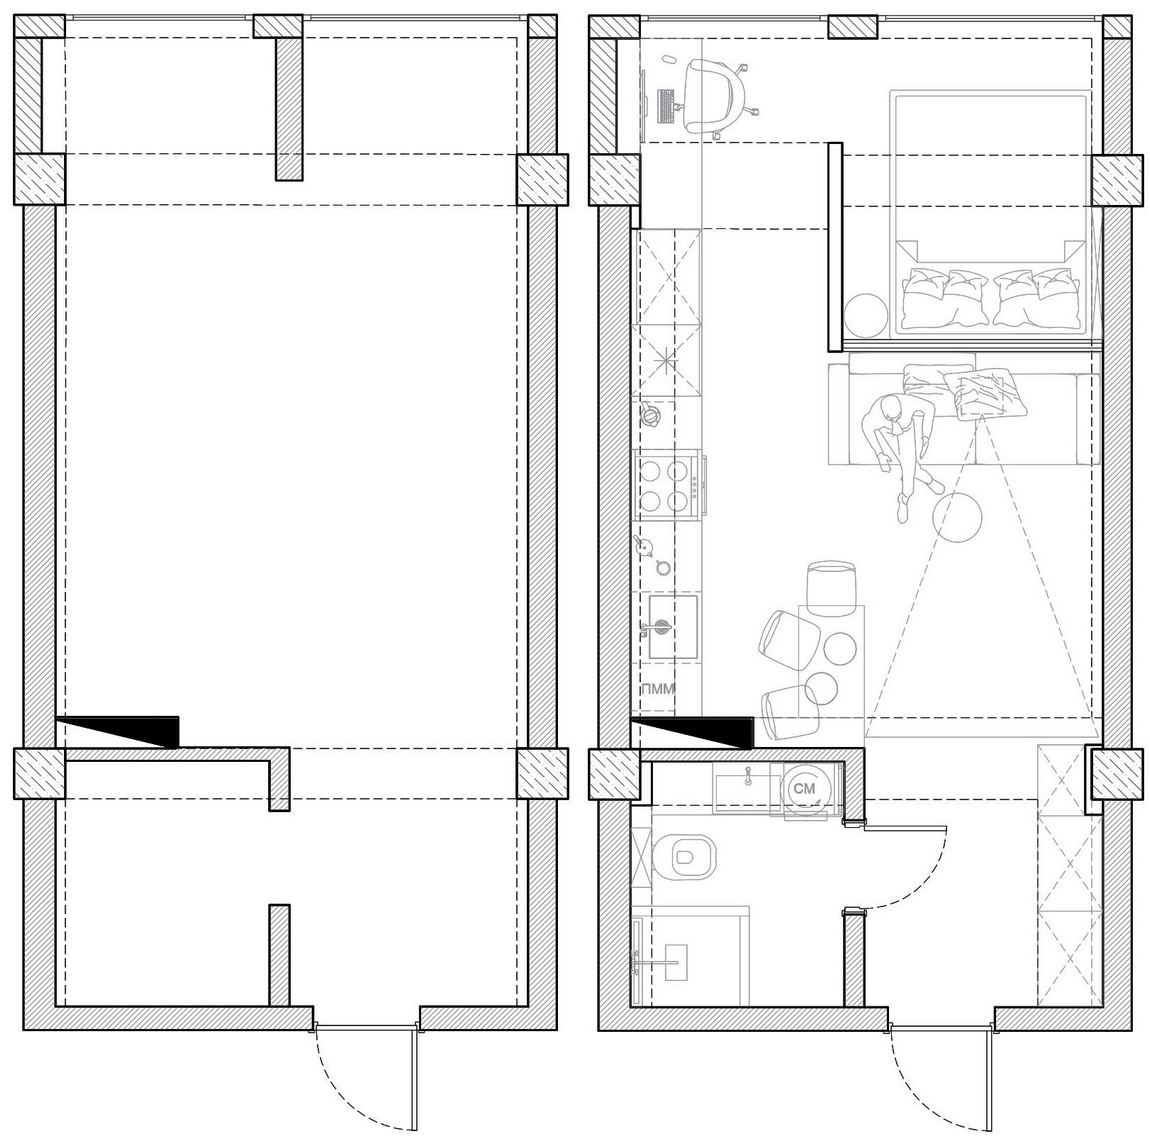 alaprajz - Üvegtégla térelválasztás nappali és háló között - modern és funkcionális berendezés 31m2-es kis lakásban